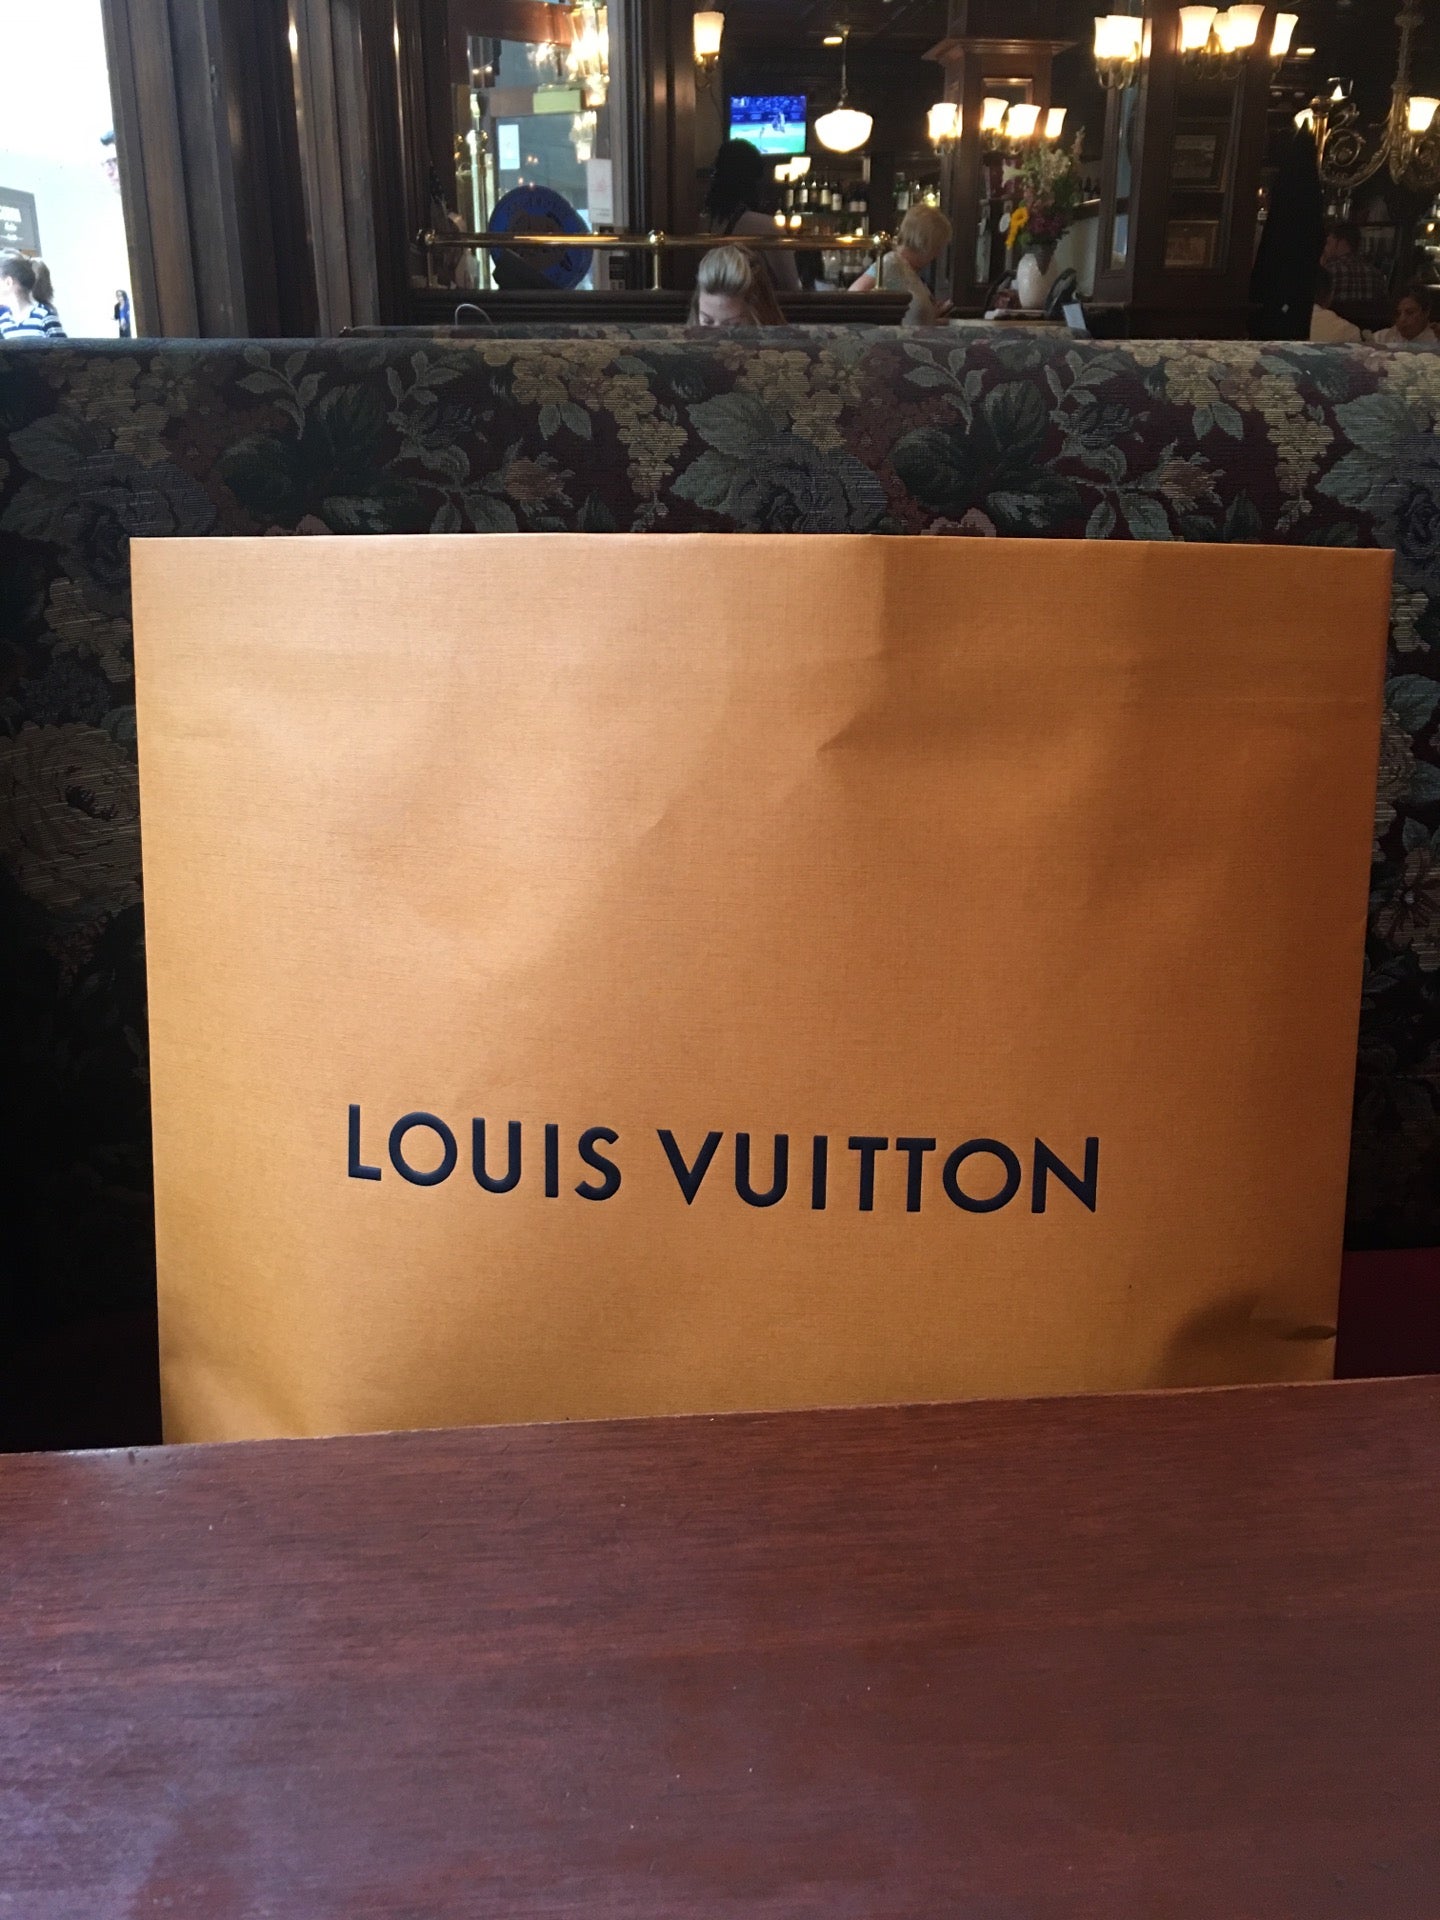 LOUIS VUITTON SHORT HILLS - 48 Photos & 134 Reviews - Level 2 Mall